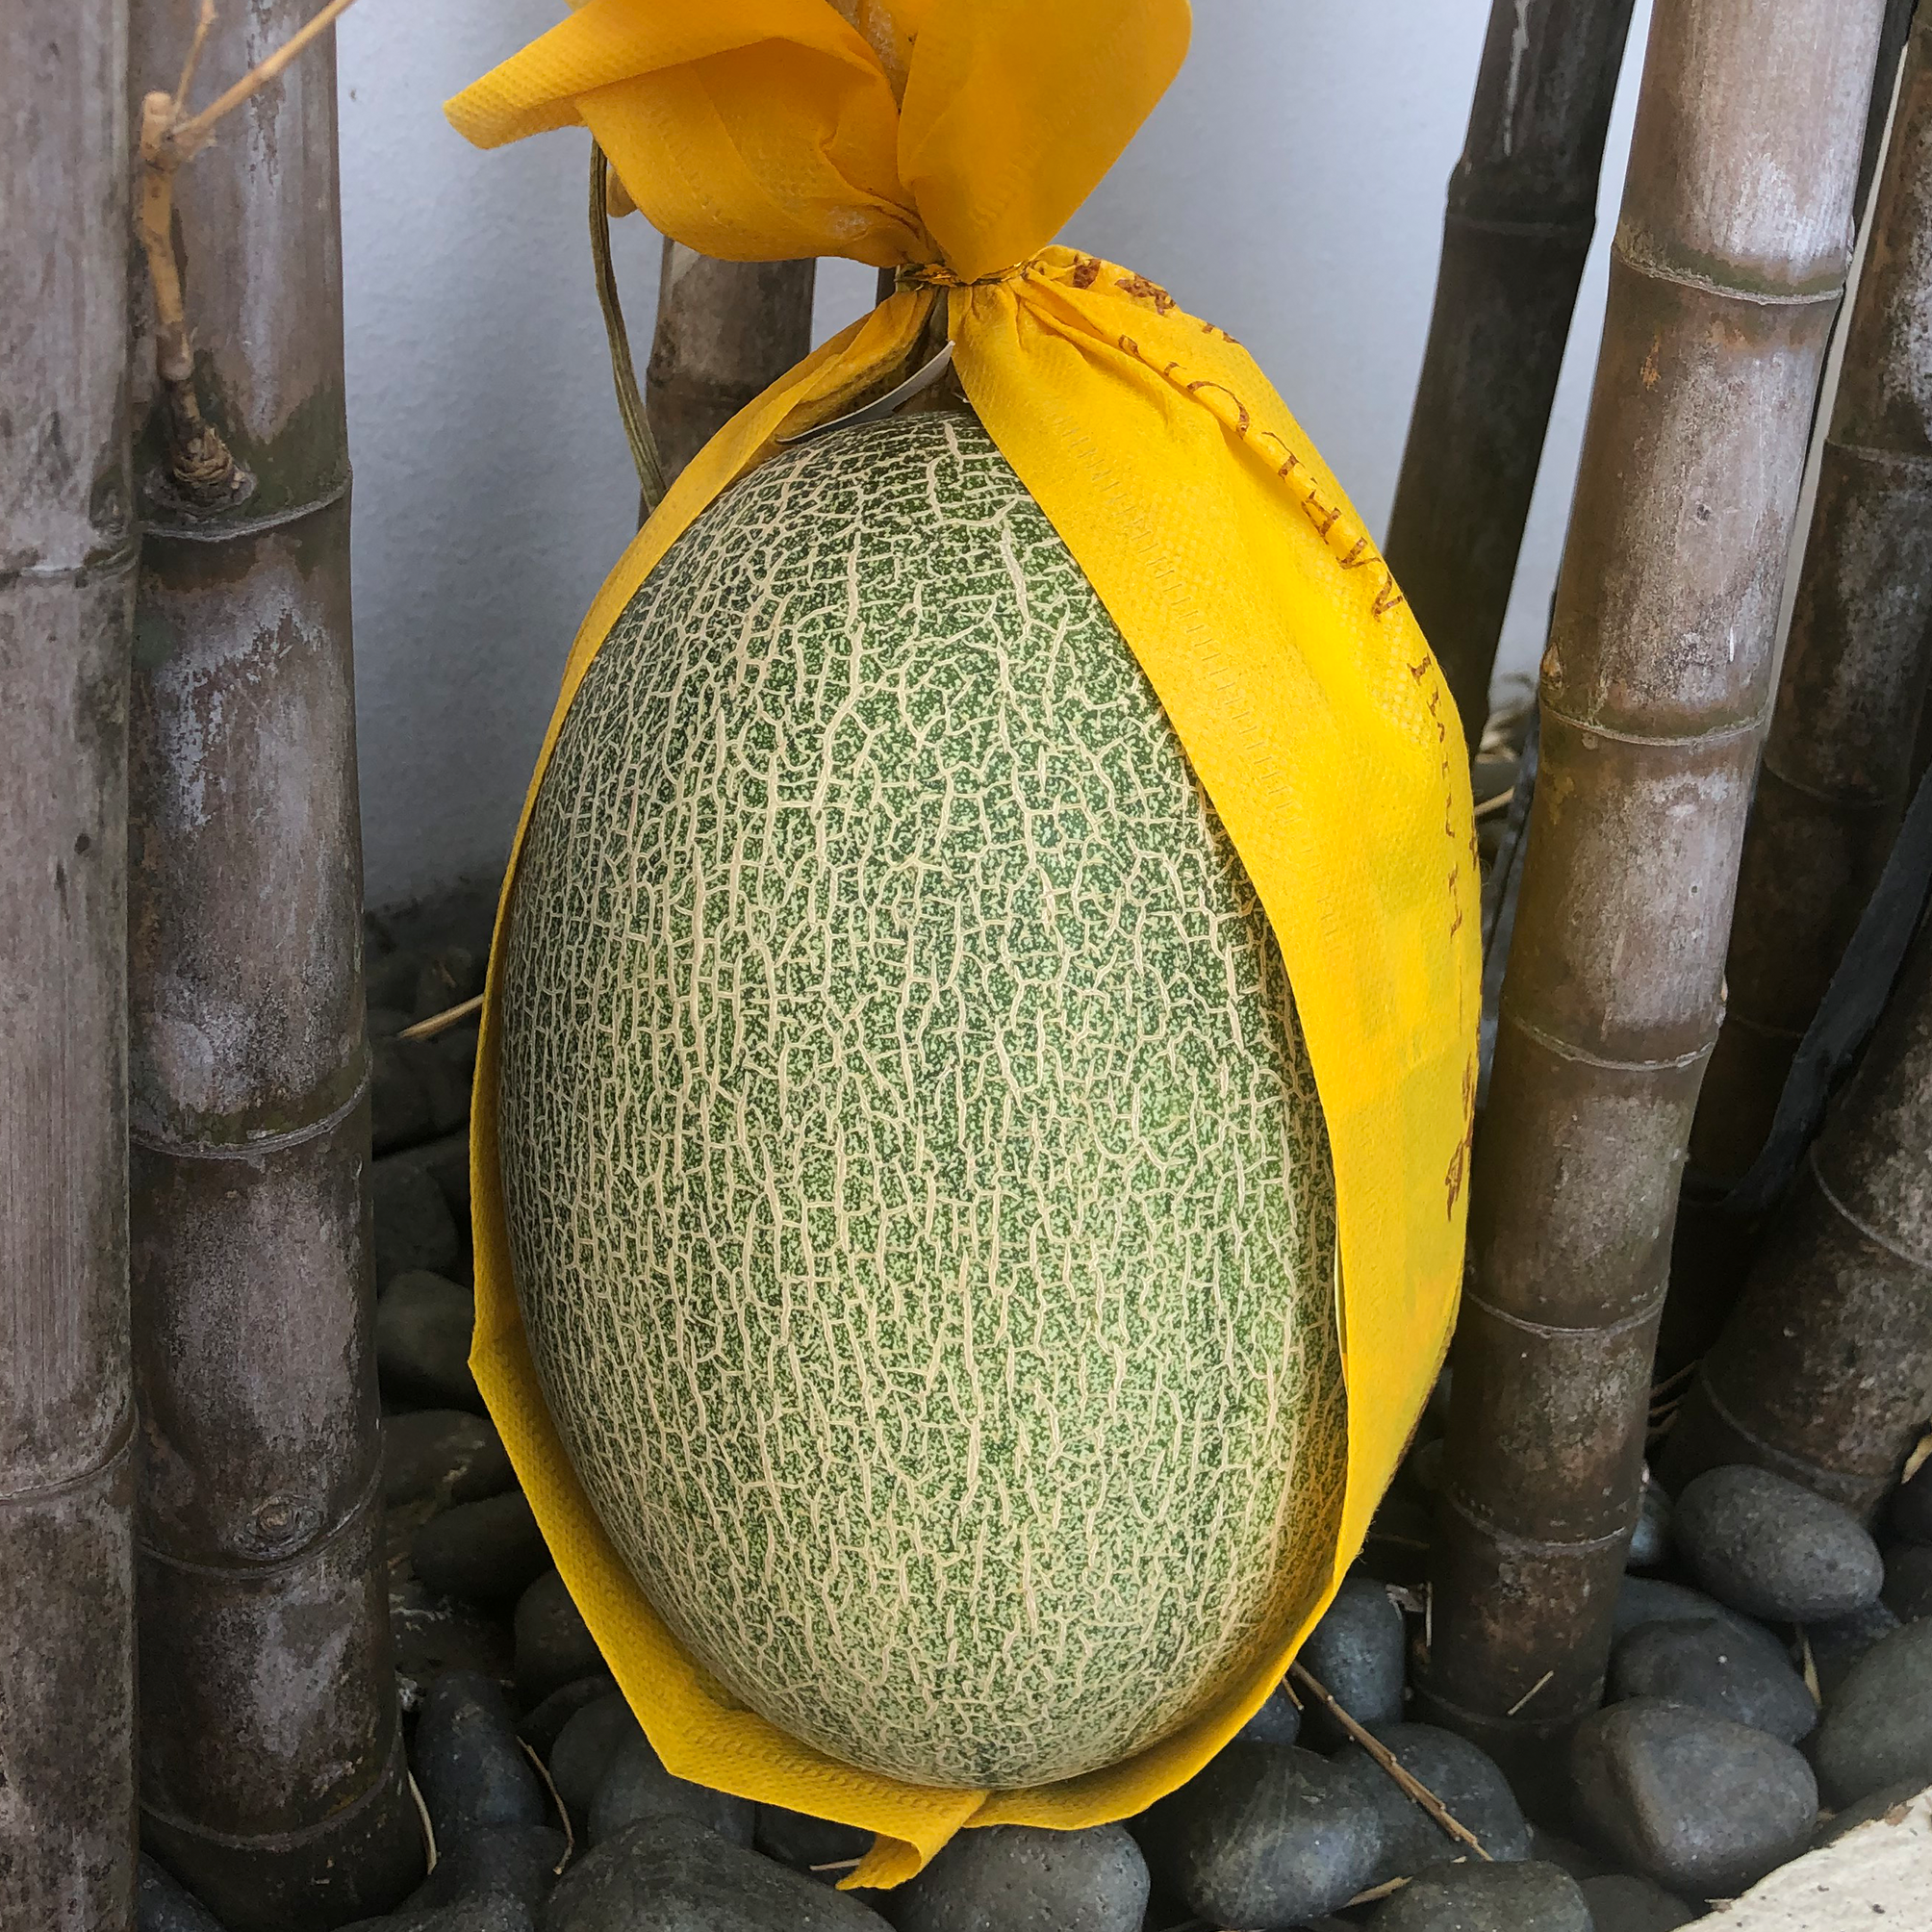 Hami Melon